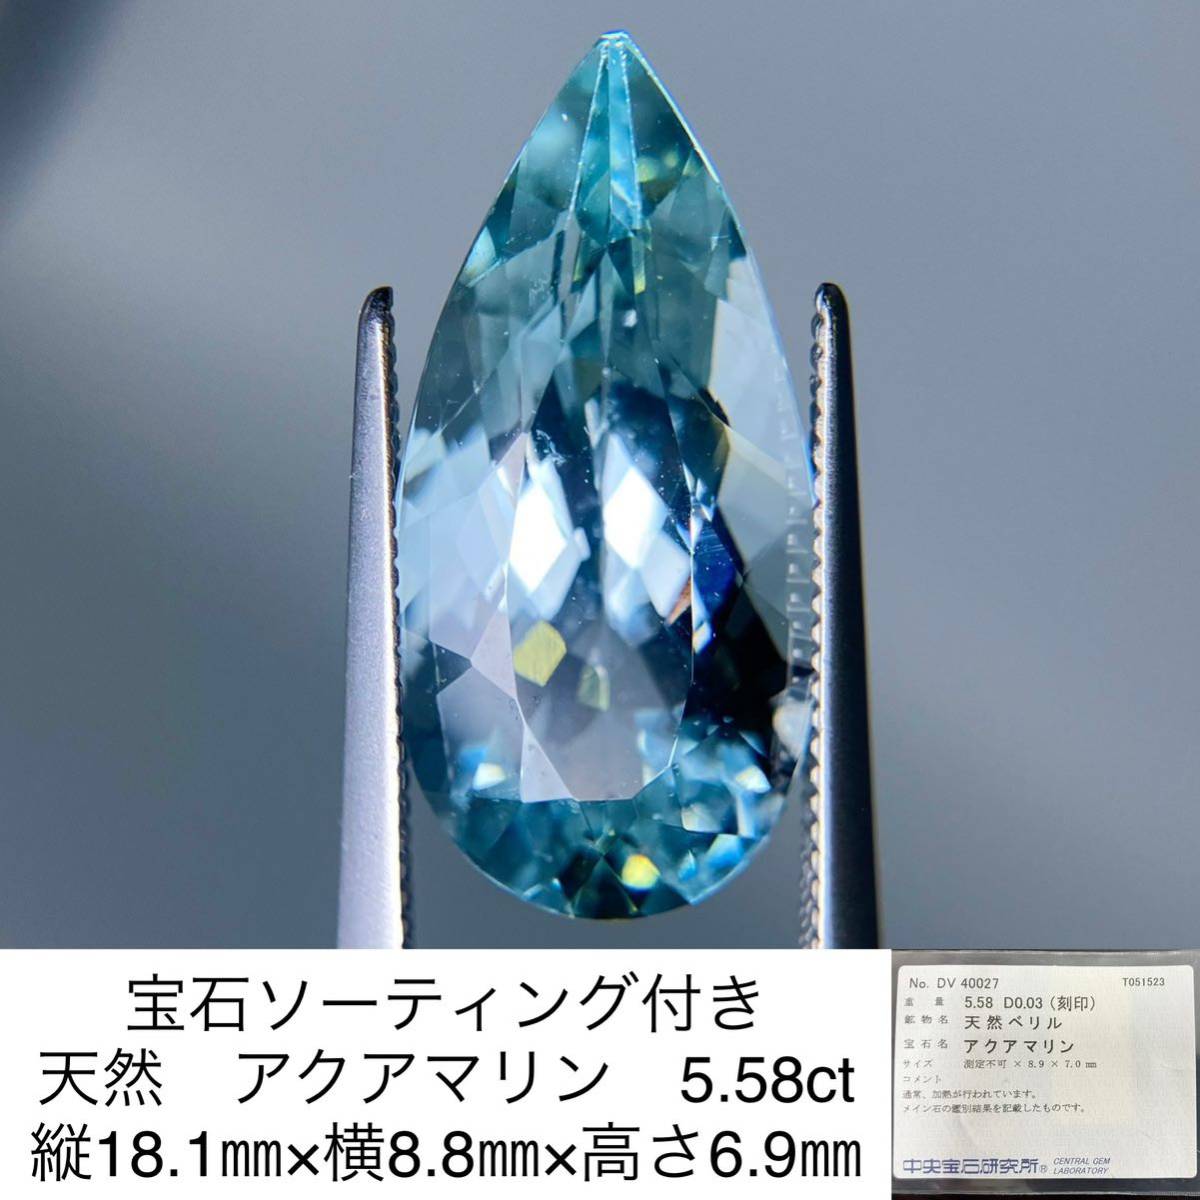  драгоценнный камень so-ting имеется натуральный аквамарин 5.58ct длина 18.1.× ширина 8.8.× высота 6.9.3217S